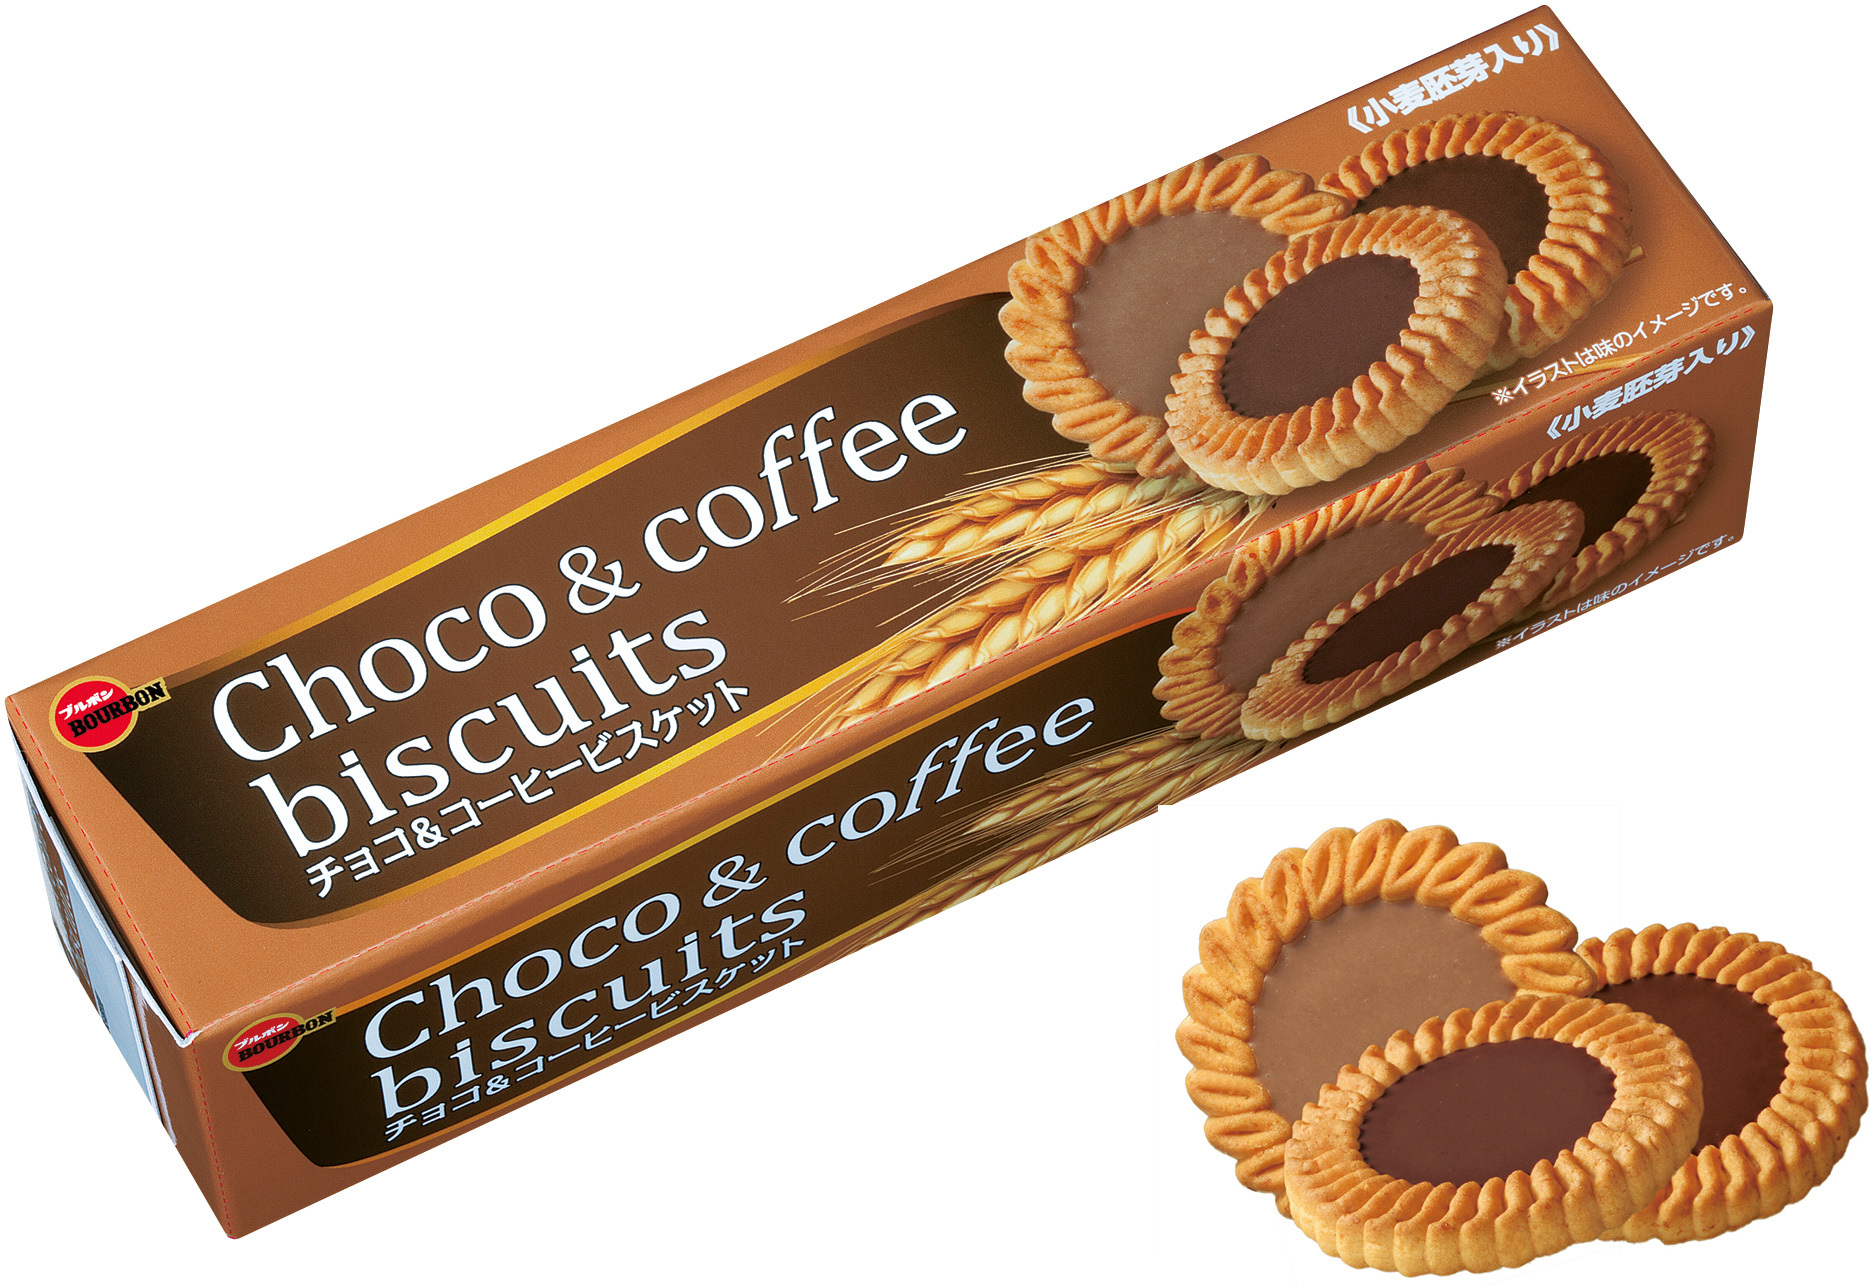 ブルボン 新パッケージデザインで登場 チョコ コーヒービスケット など3品を11月27日 火 に新発売 株式会社ブルボンのプレスリリース